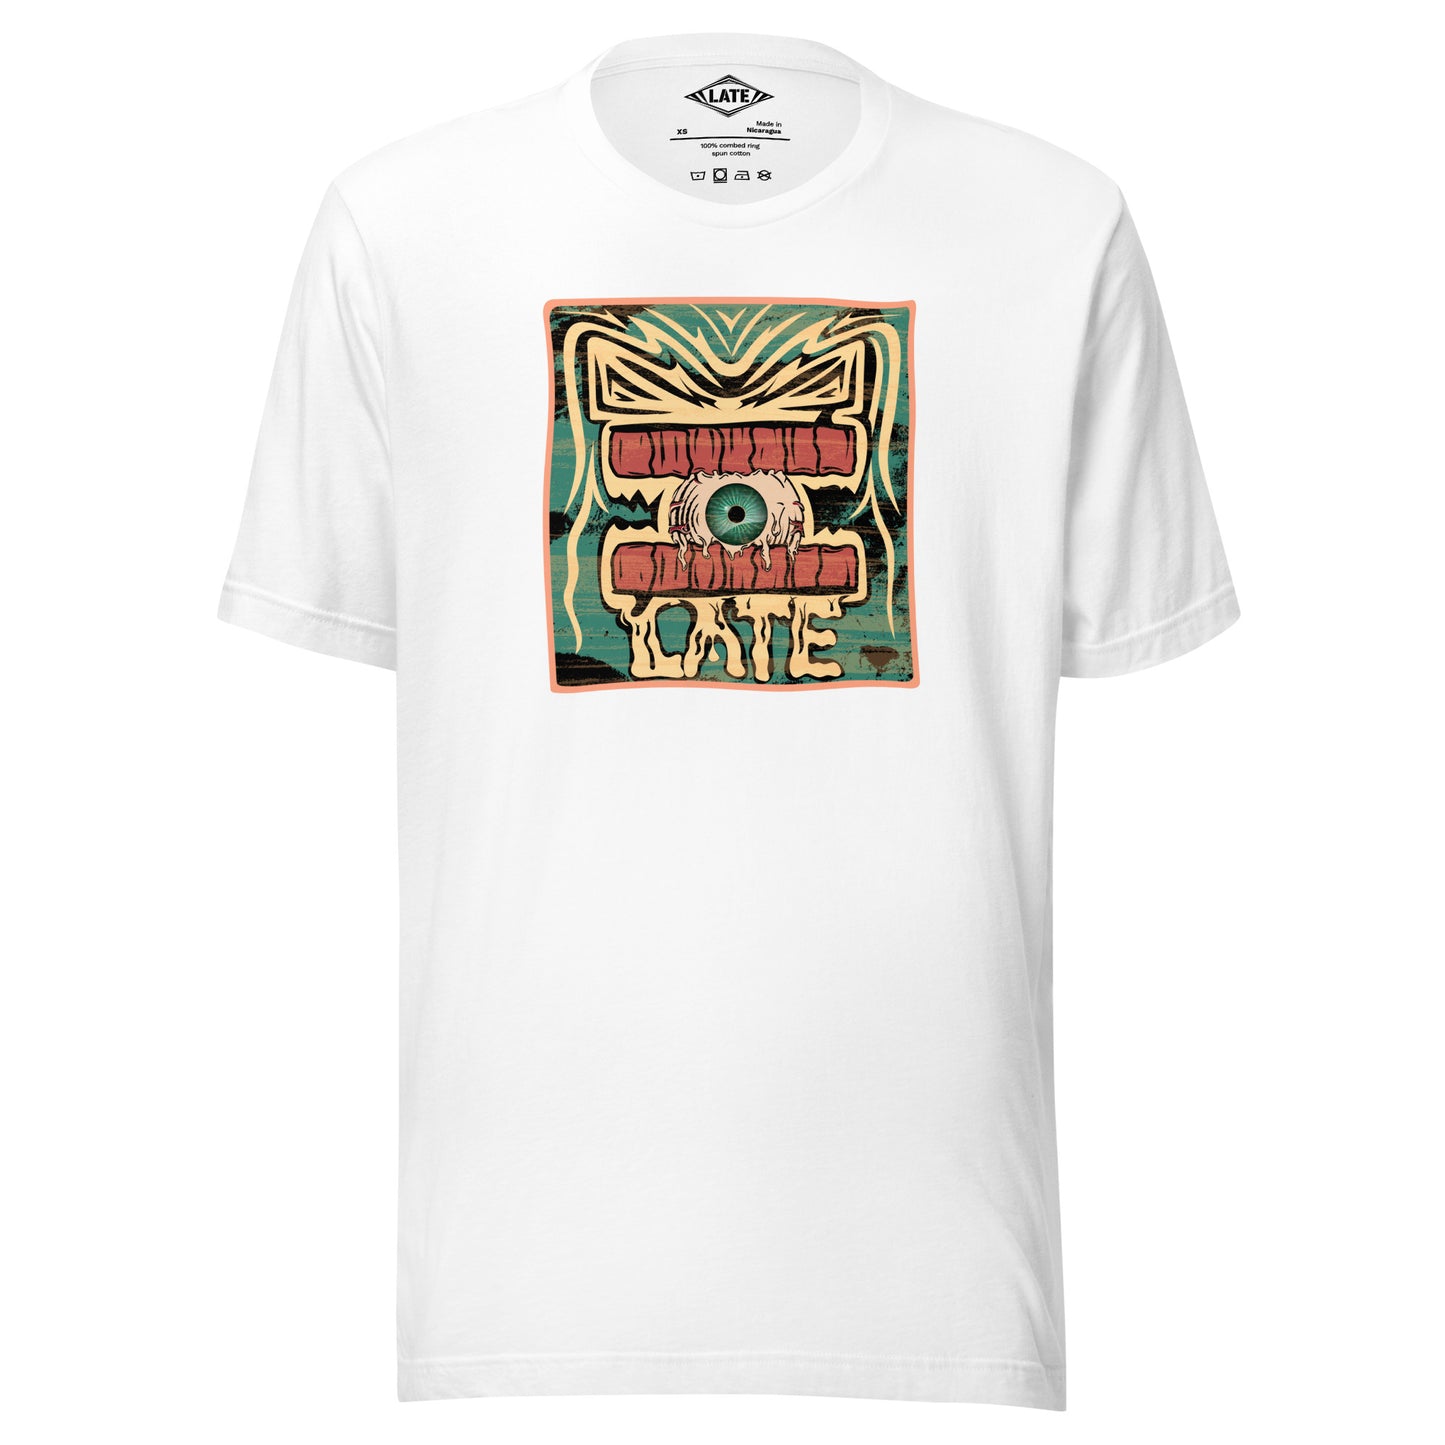 T-shirt rétro skateboarding, design couleur délavée, années 70,80, original dent et oeil skate, tee-shirt unisexe blanc